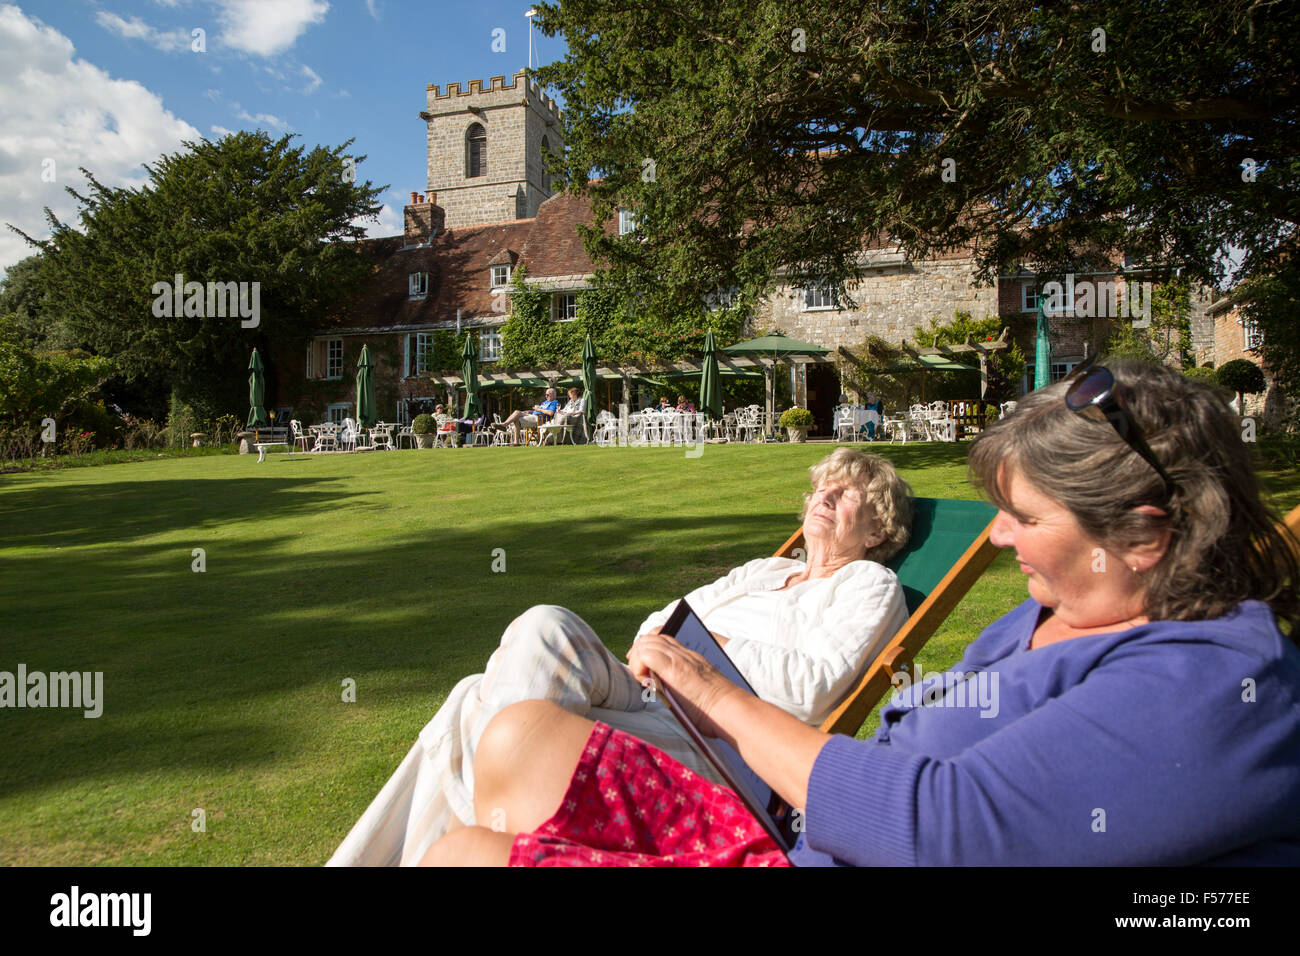 Two women sunbathing in gardens of the Priory Hotel, Wareham, Dorset, England, UK Stock Photo